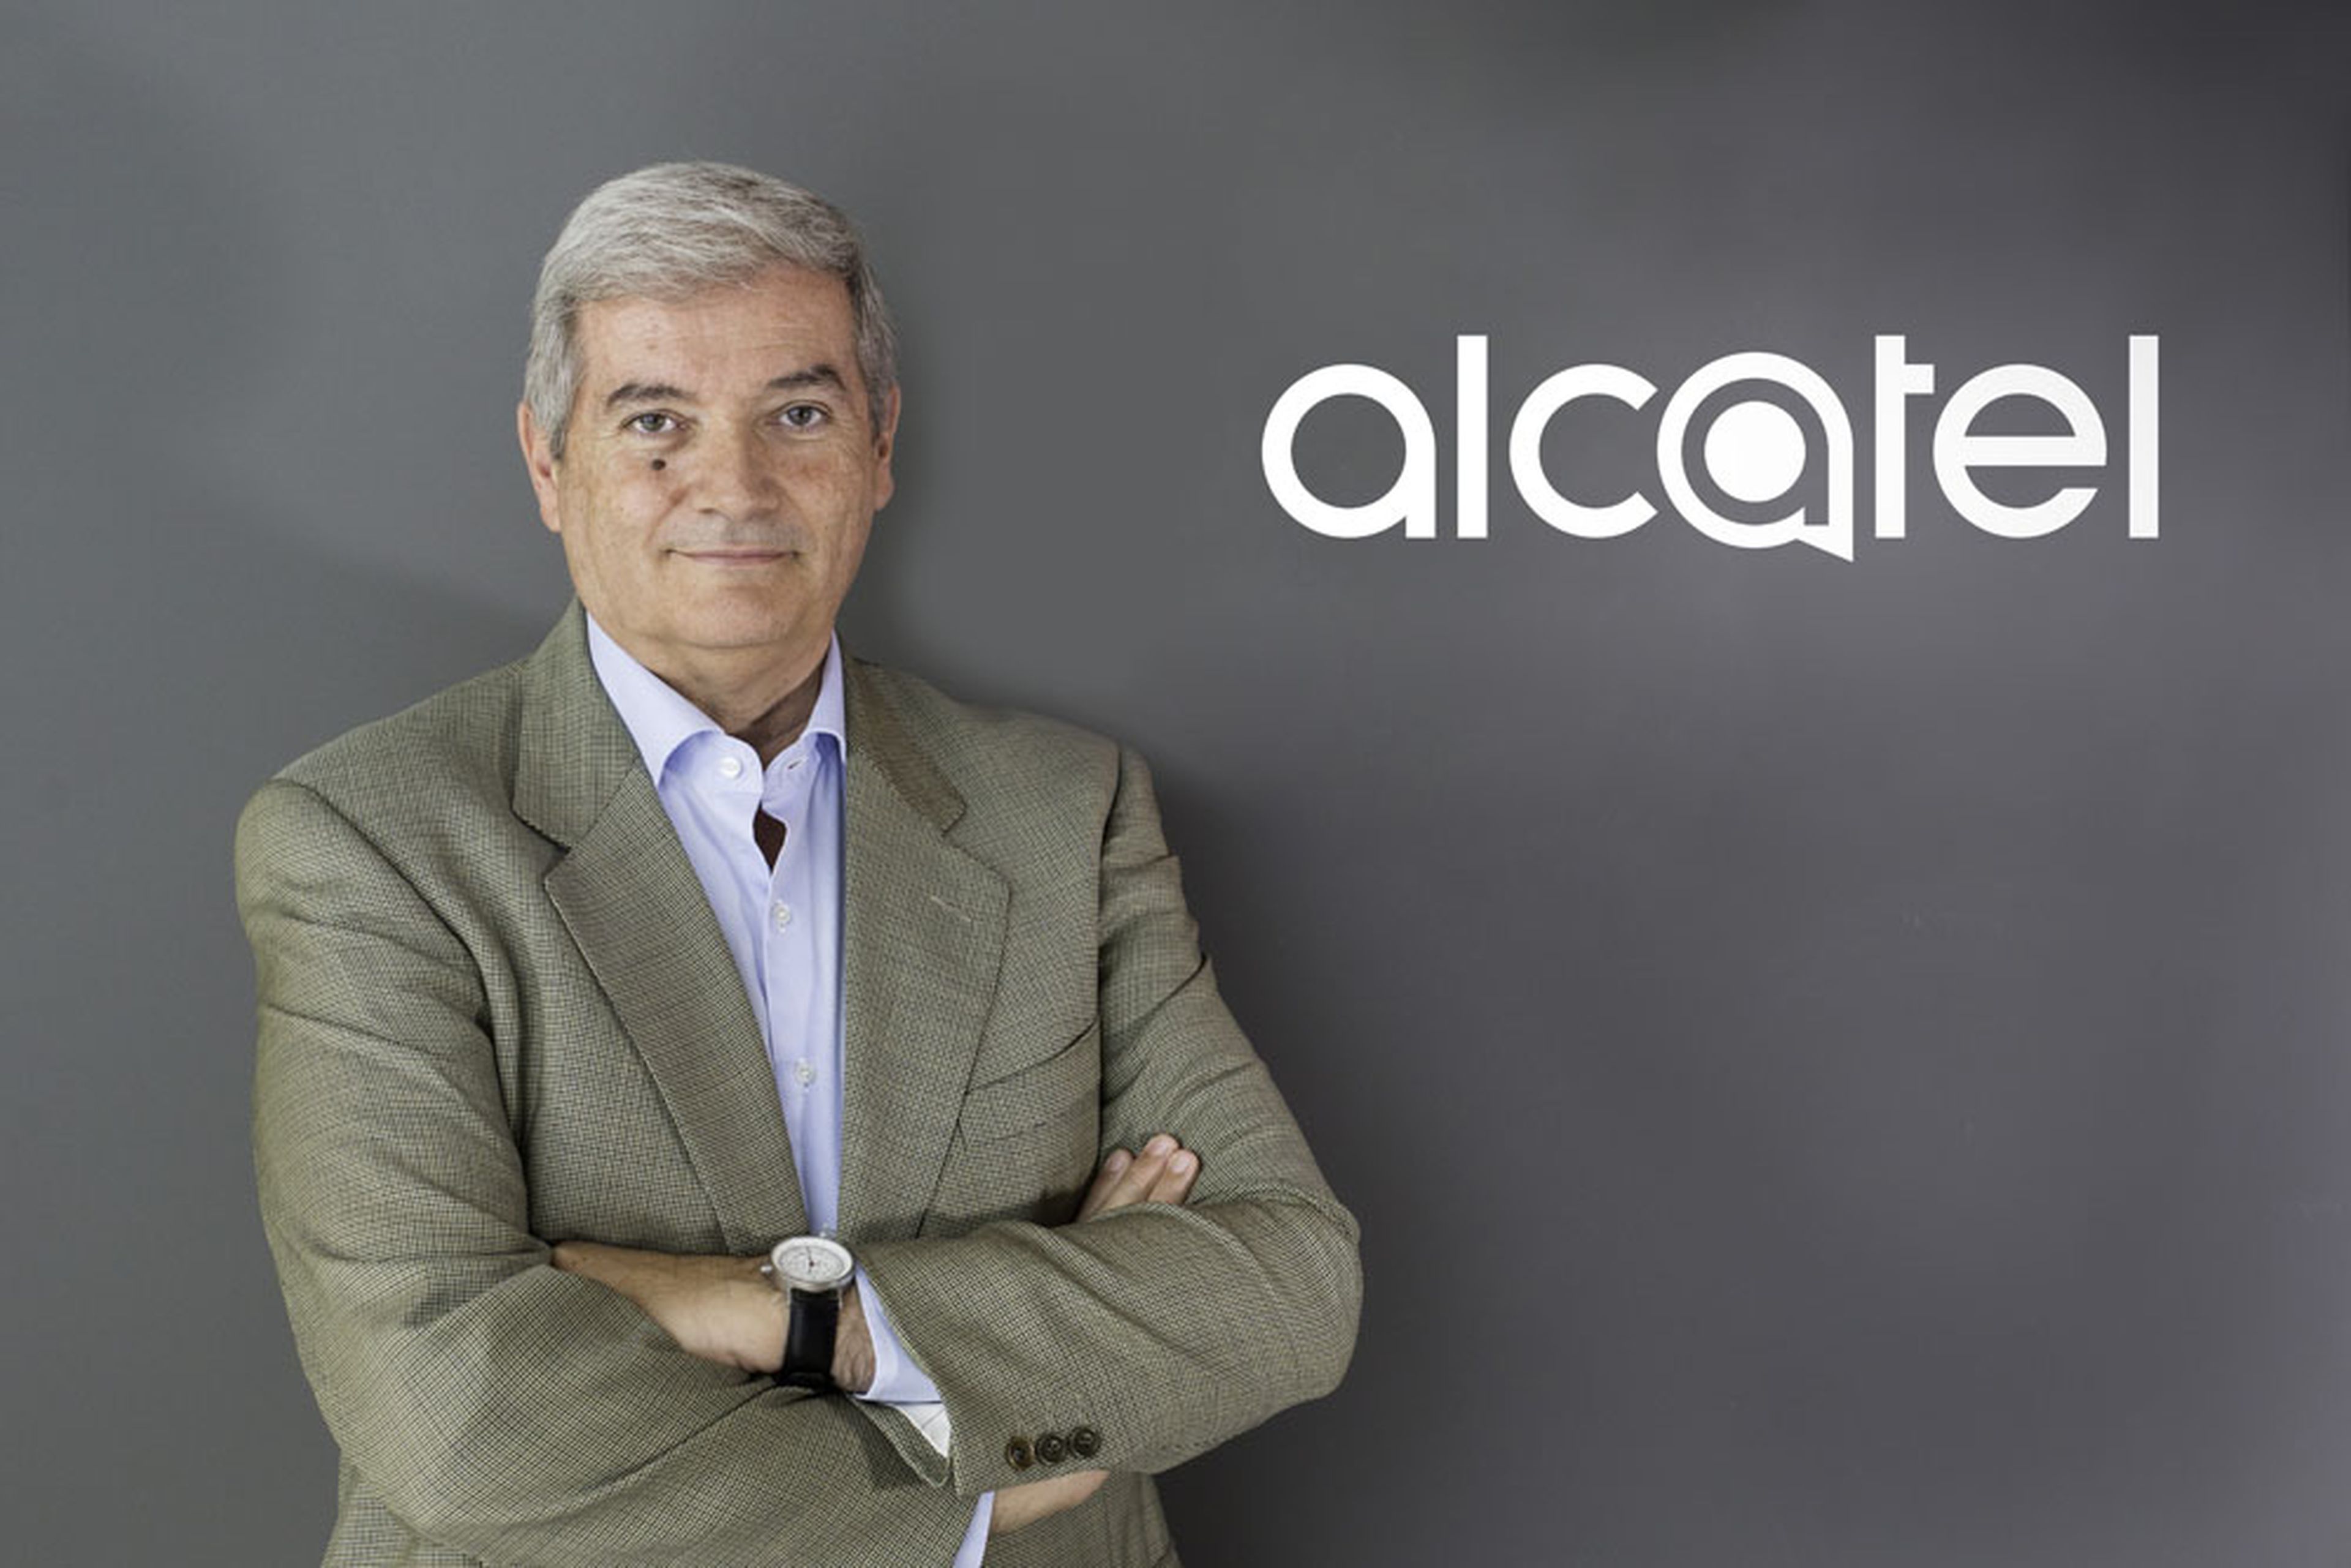 Carlos Cano Alcatel